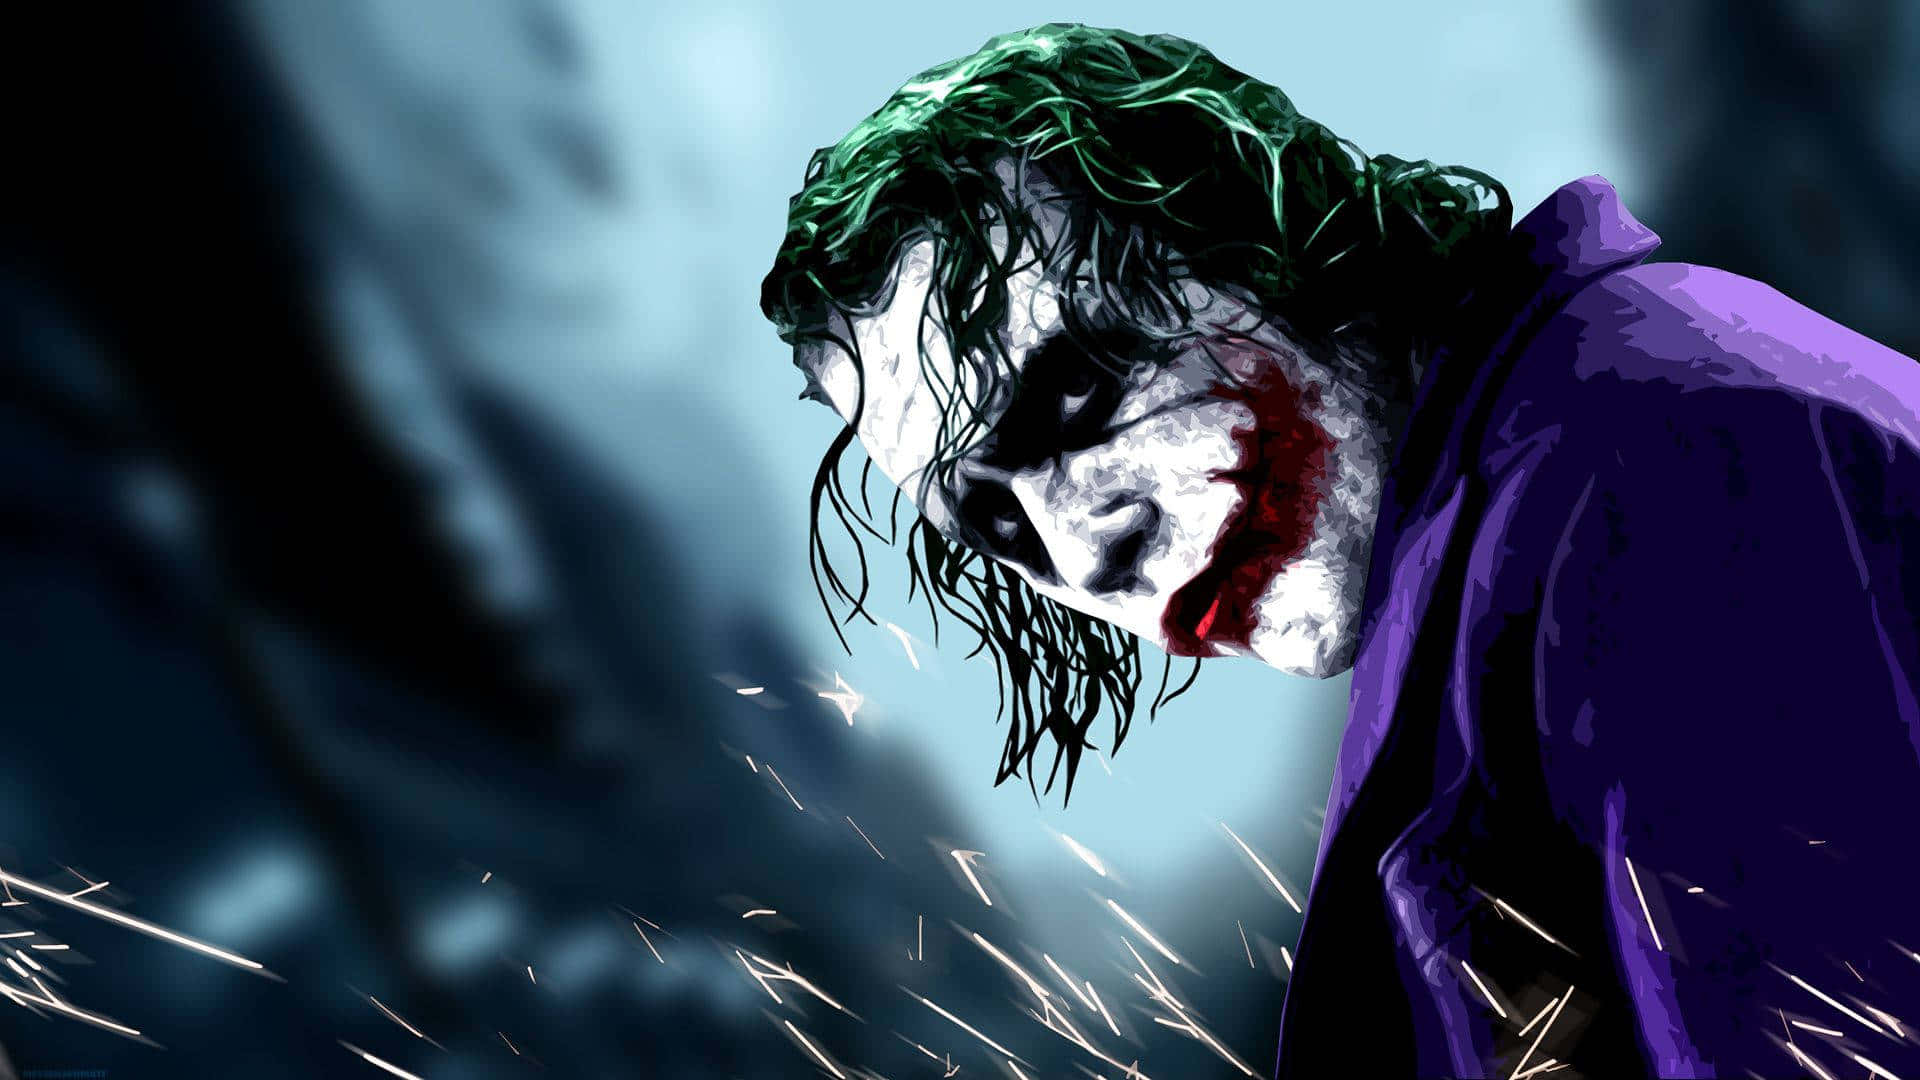 Joker's Sinister Smile